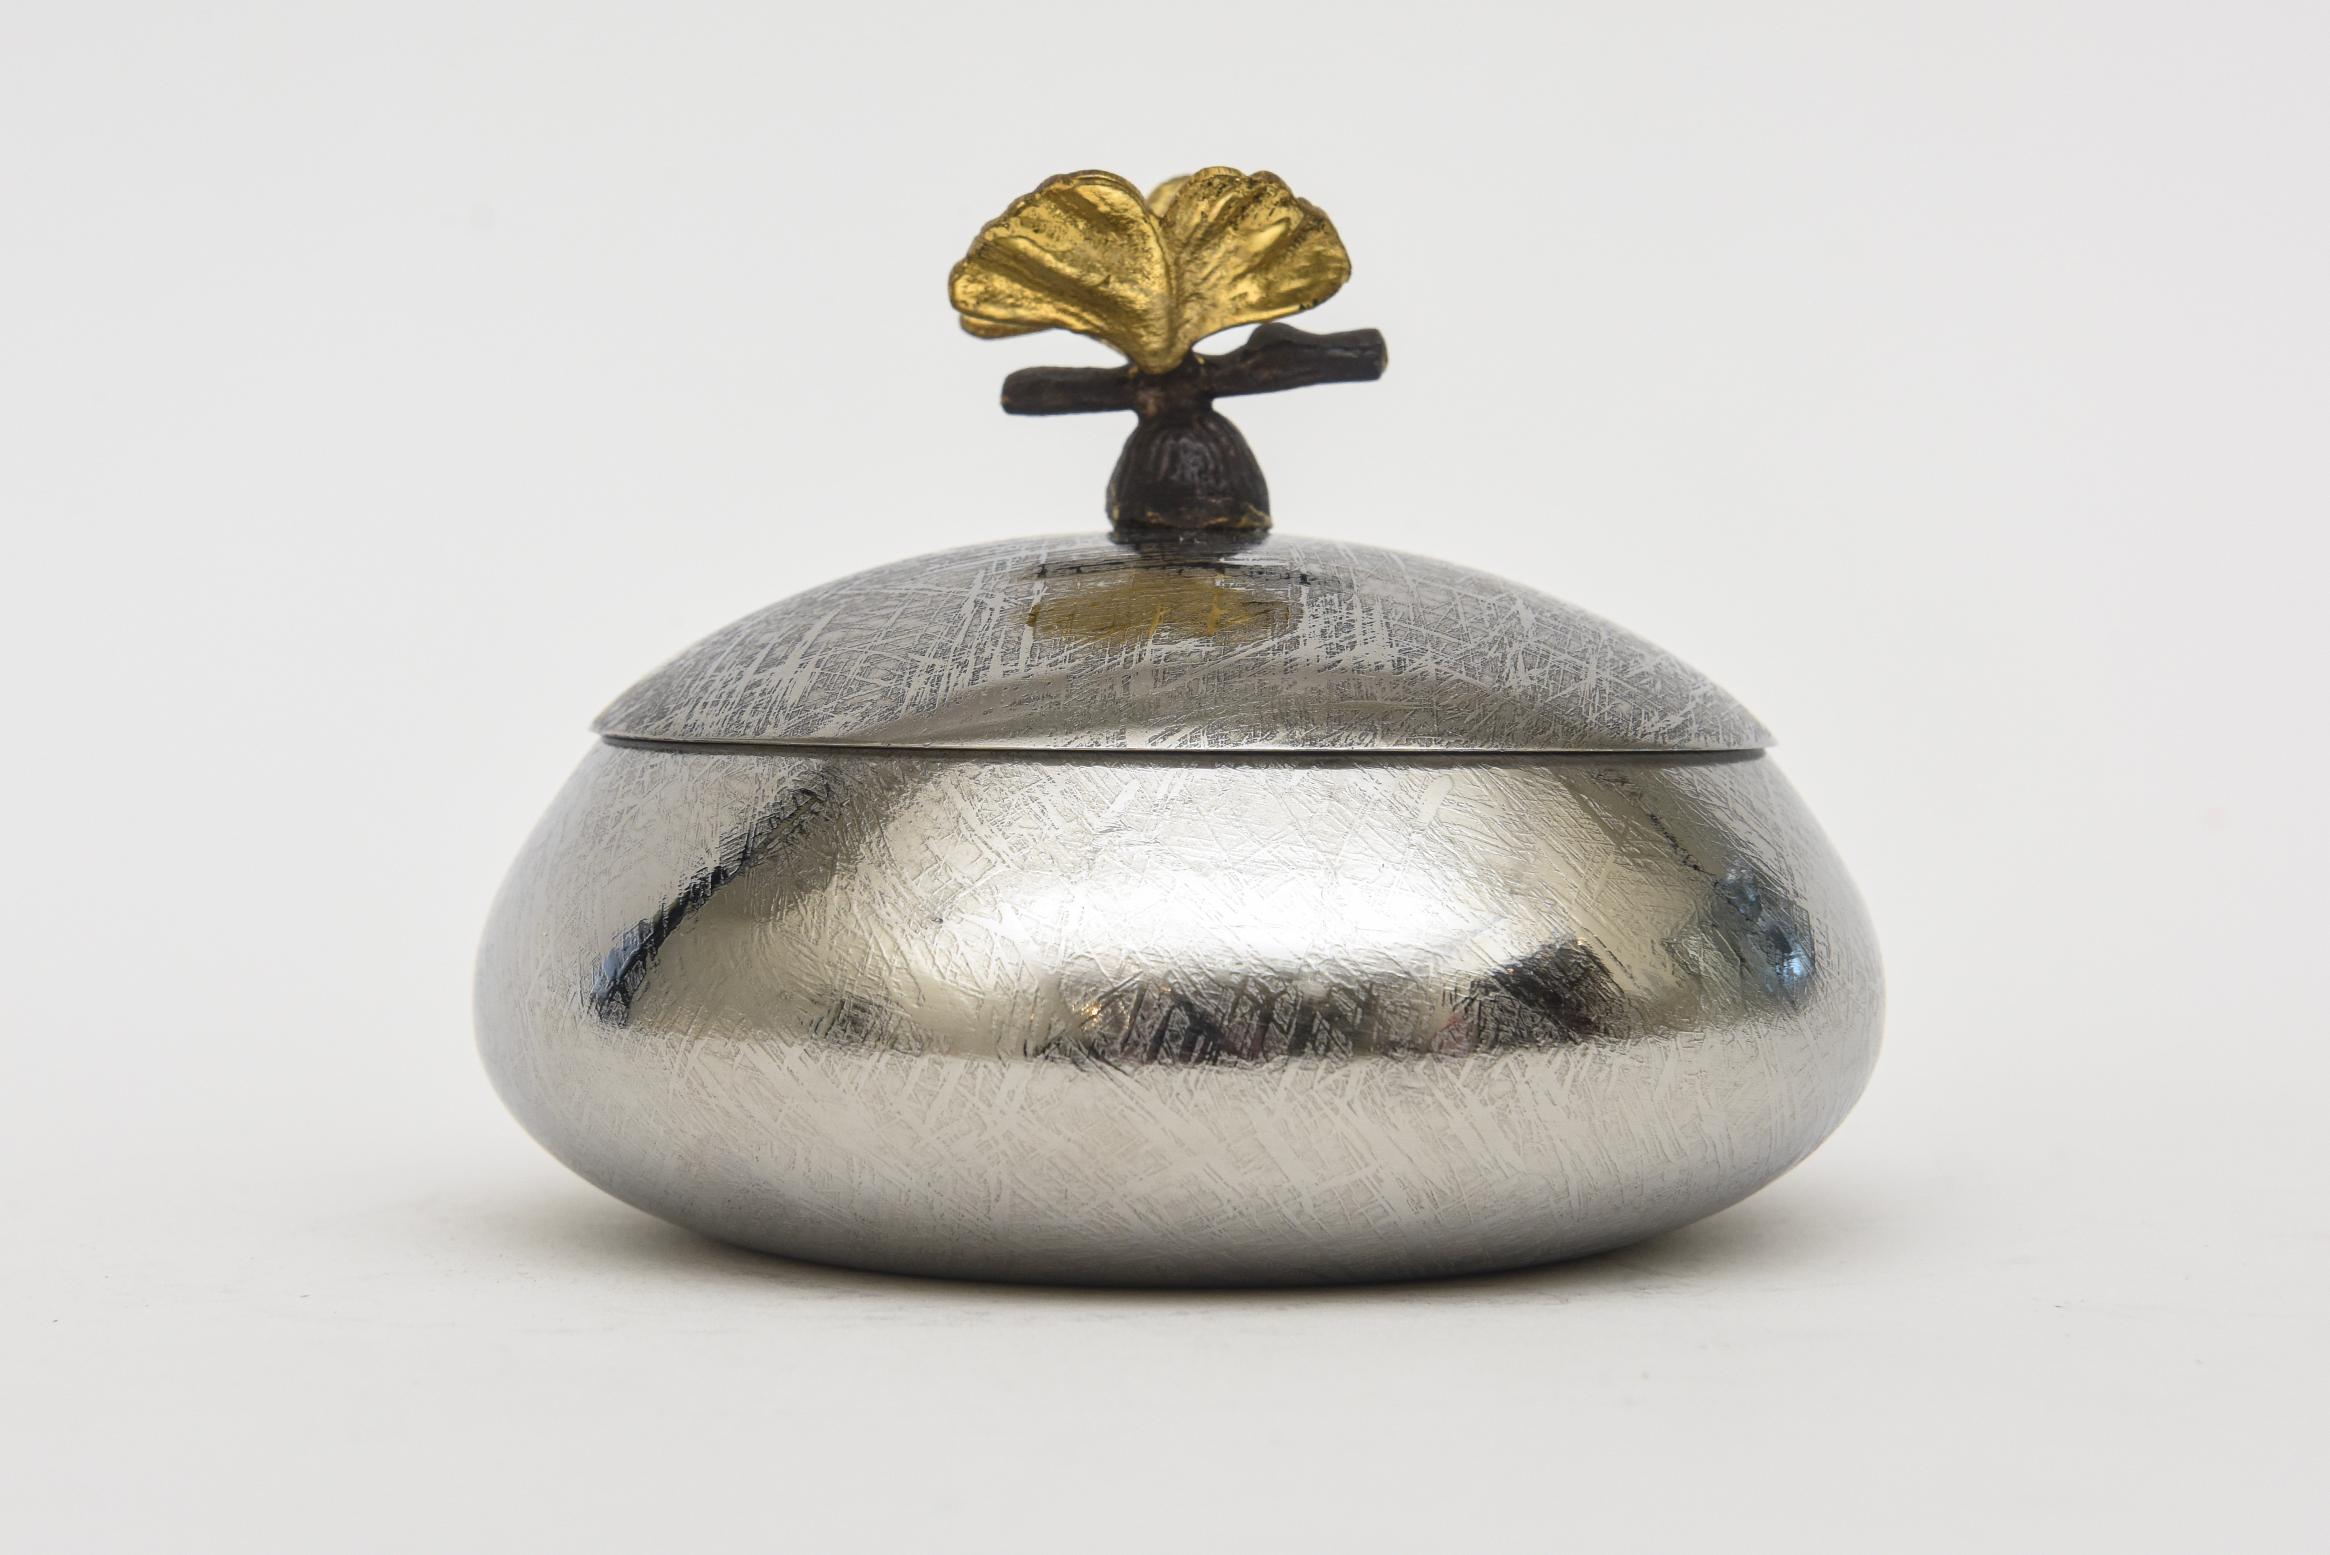 Cette jolie petite boîte ronde en deux parties est une pièce précoce des designs de MIchael Aram du début des années 90.  Le dessus de la boîte est en métal argenté avec une fleur en métal noirci et en laiton. L'intérieur est de couleur crème